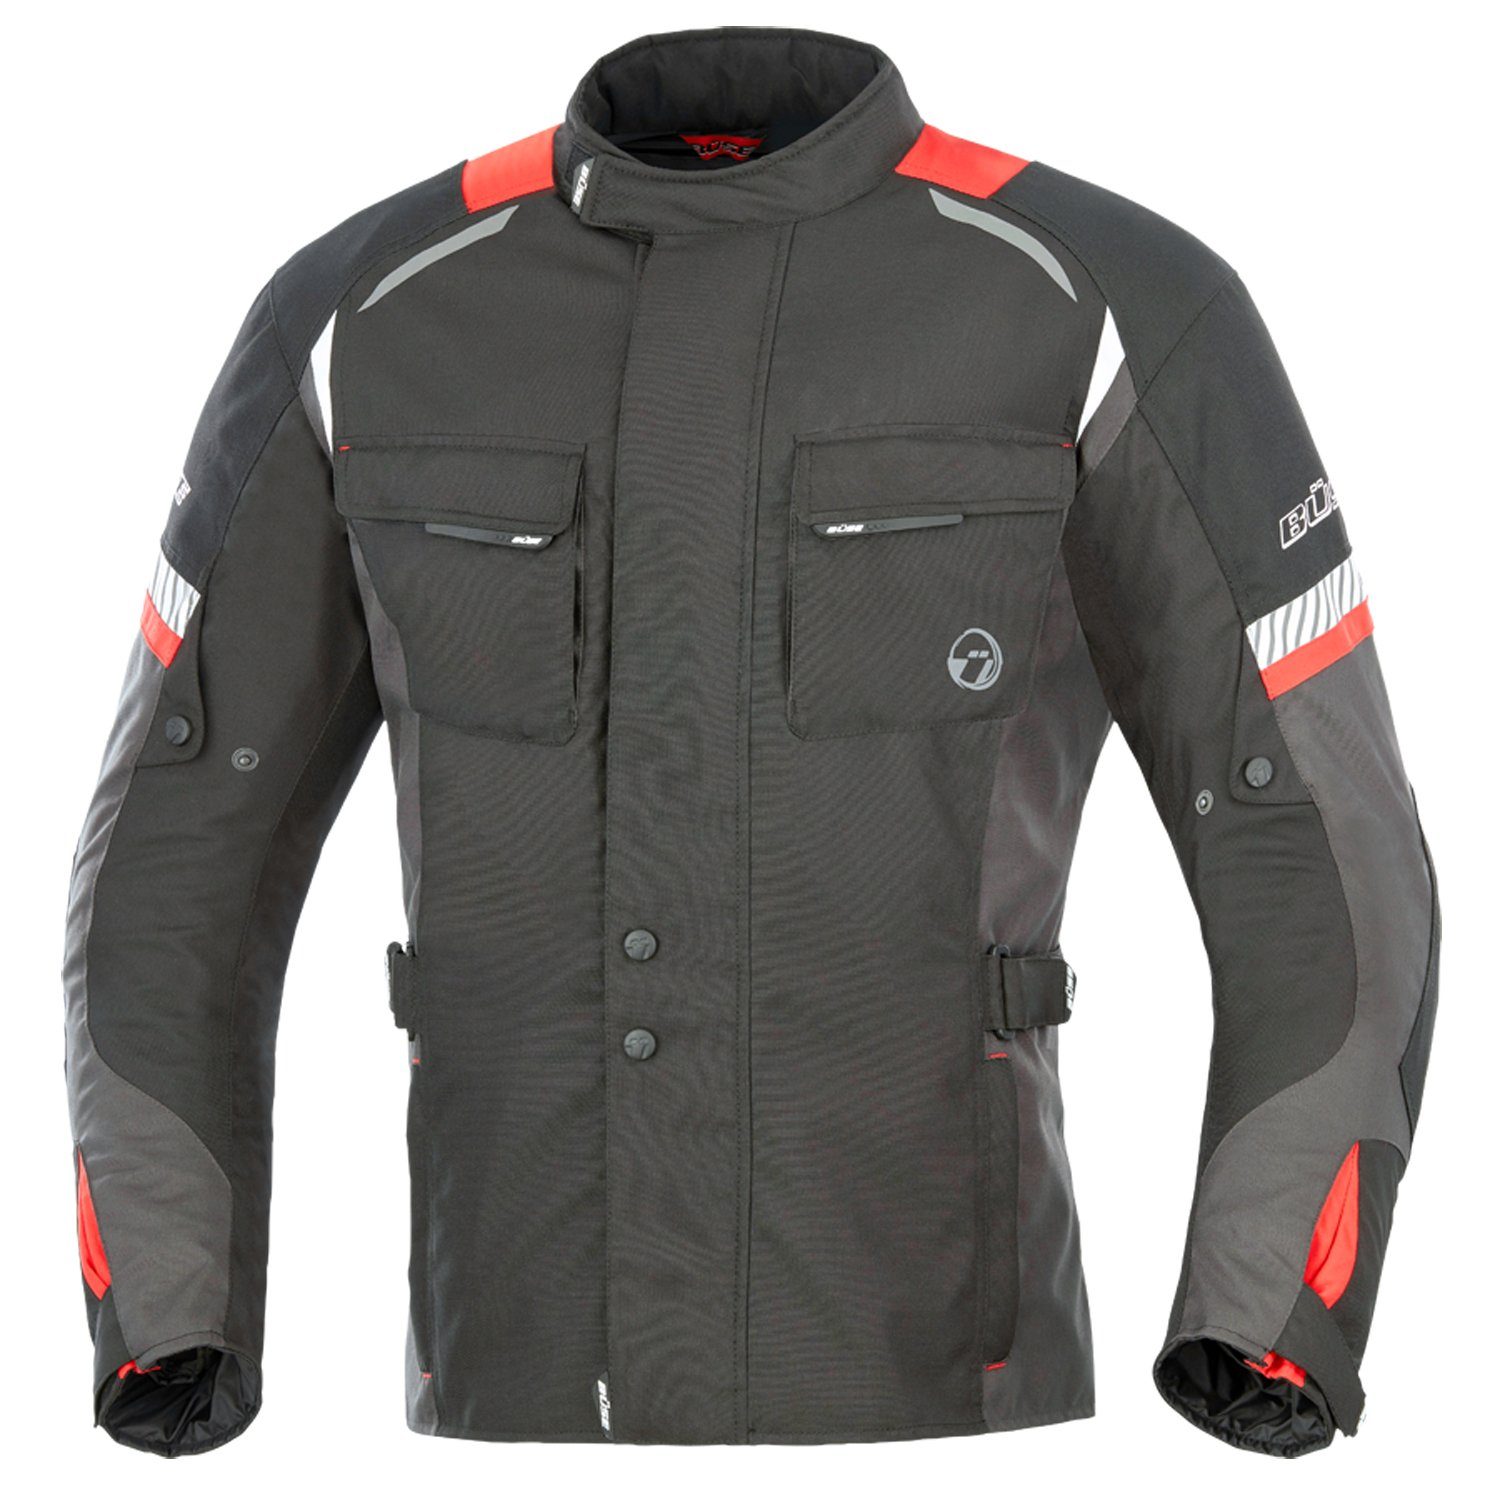 Büse Motorradjacke Breno schwarz-rot mit Protektoren wasserdicht winddicht Belüftung Textiljacke Urban Style leicht gewachst | Jacken